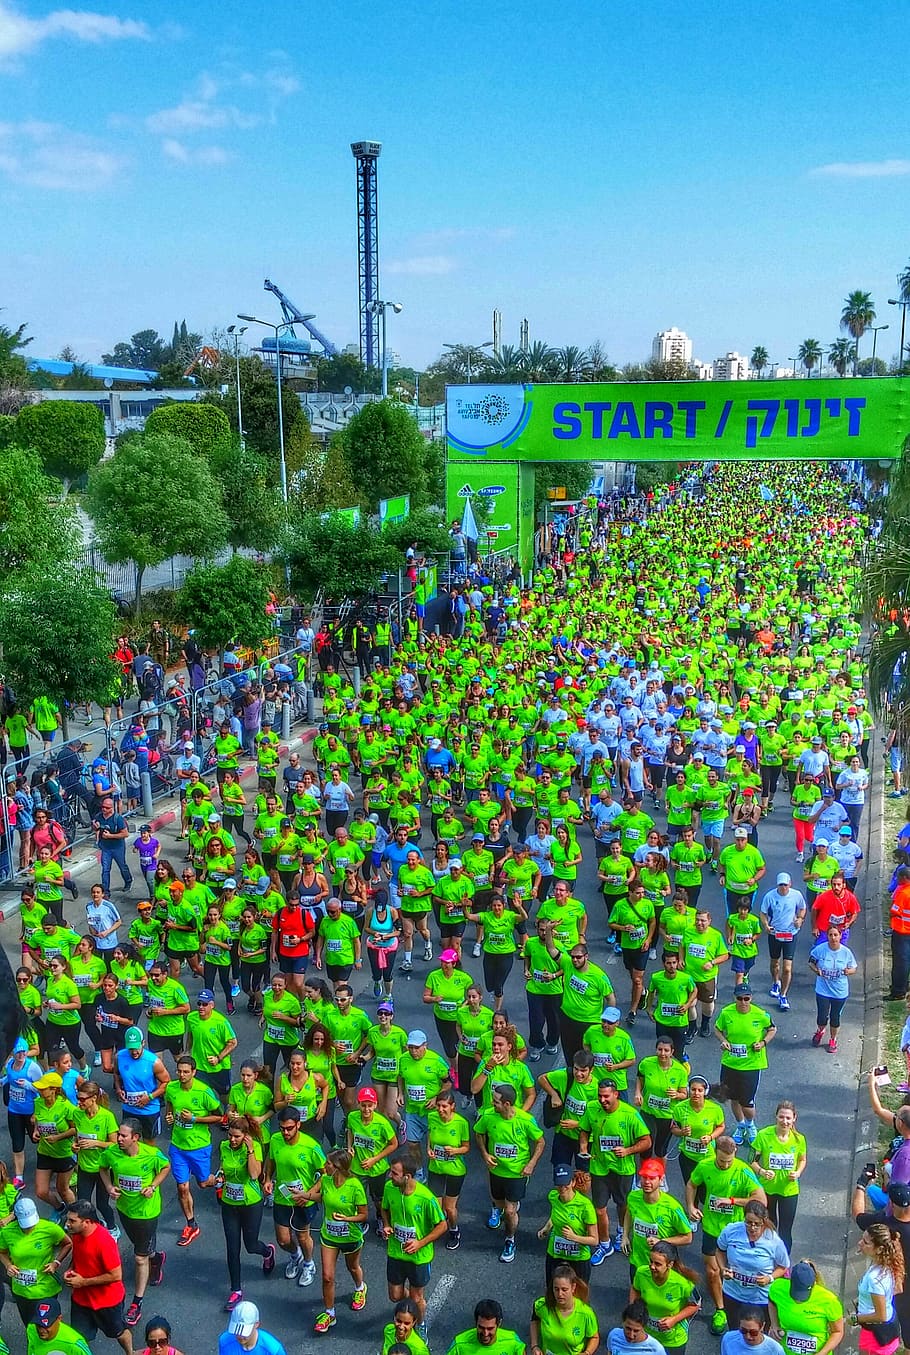 tlv, tel aviv, israel, tlv marathon, tel aviv marathon, marathon, tel-aviv marathon, race, running, large group of people